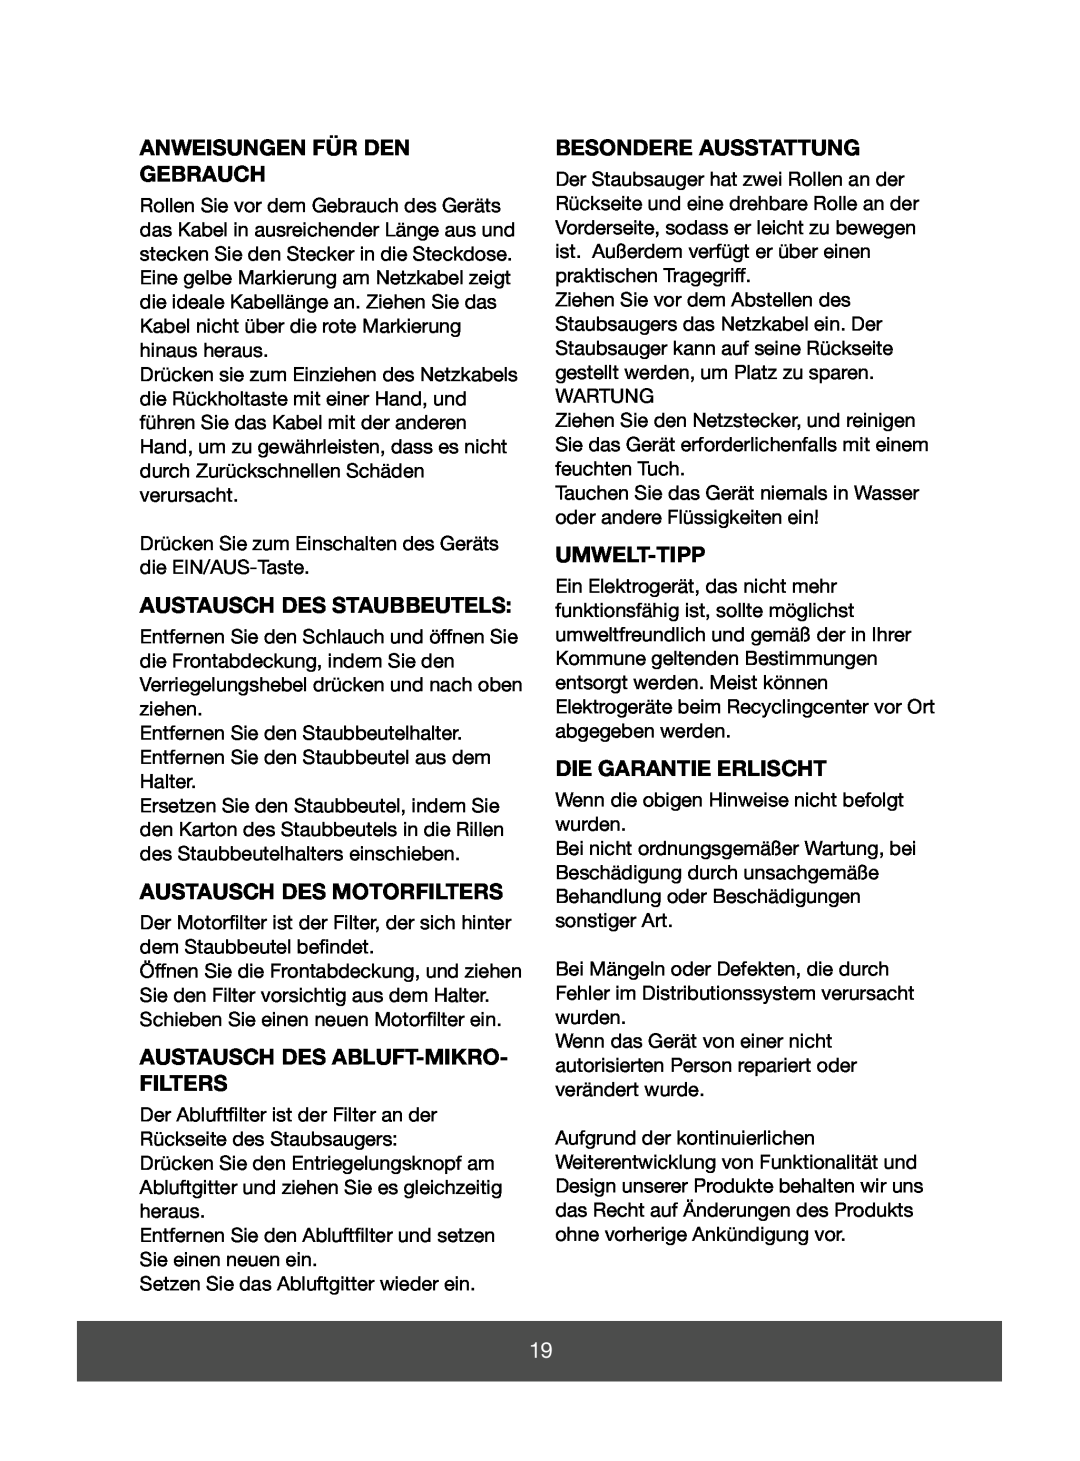 Melissa 640-064 manual Anweisungen Für Den Gebrauch, Austausch Des Staubbeutels, Austausch Des Motorfilters, Umwelt-Tipp 